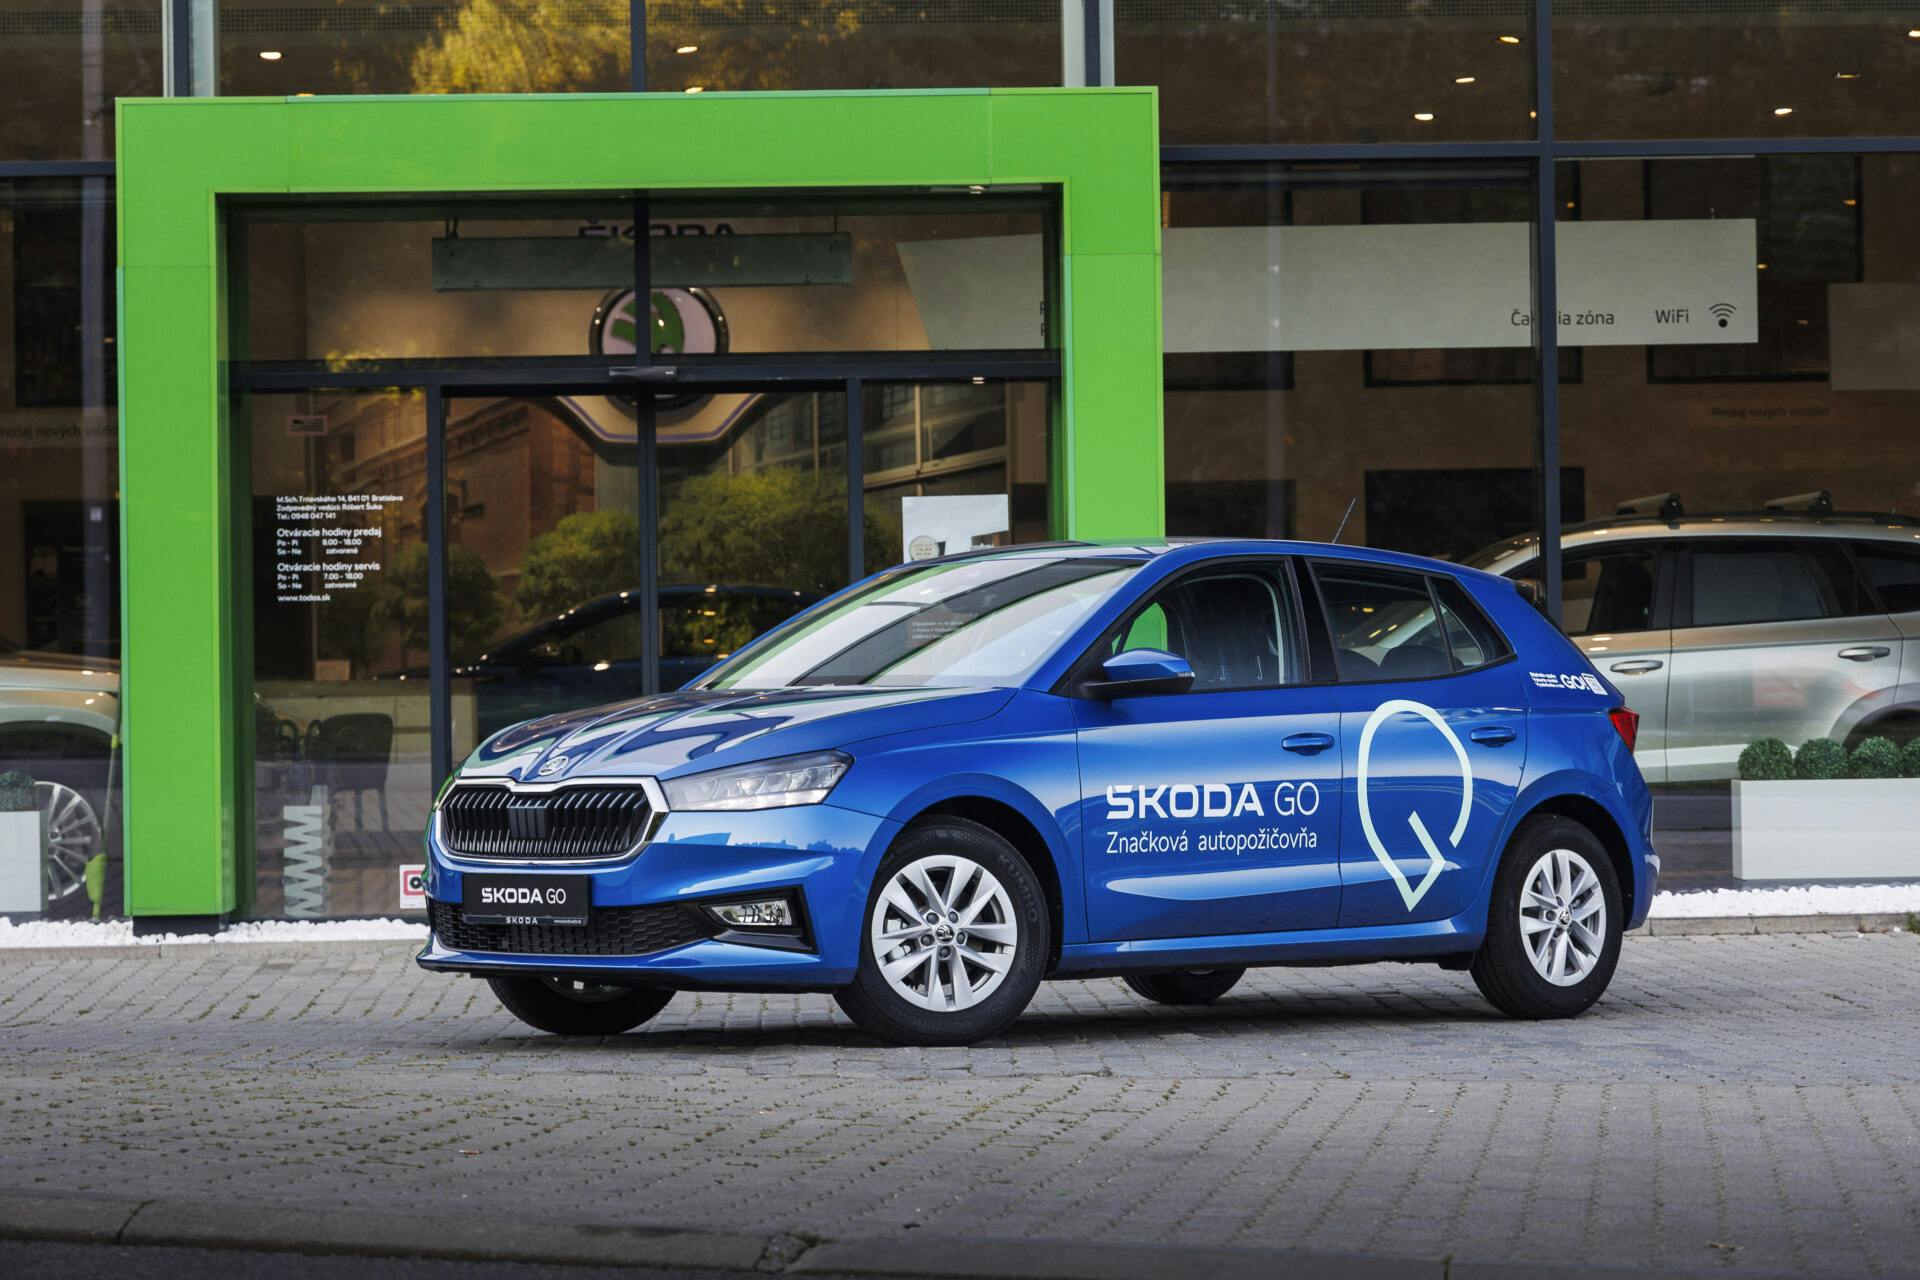 Škoda GO prináša inovatívny spôsob požičiavania áut priamo od autorizovaného predajcu Škoda